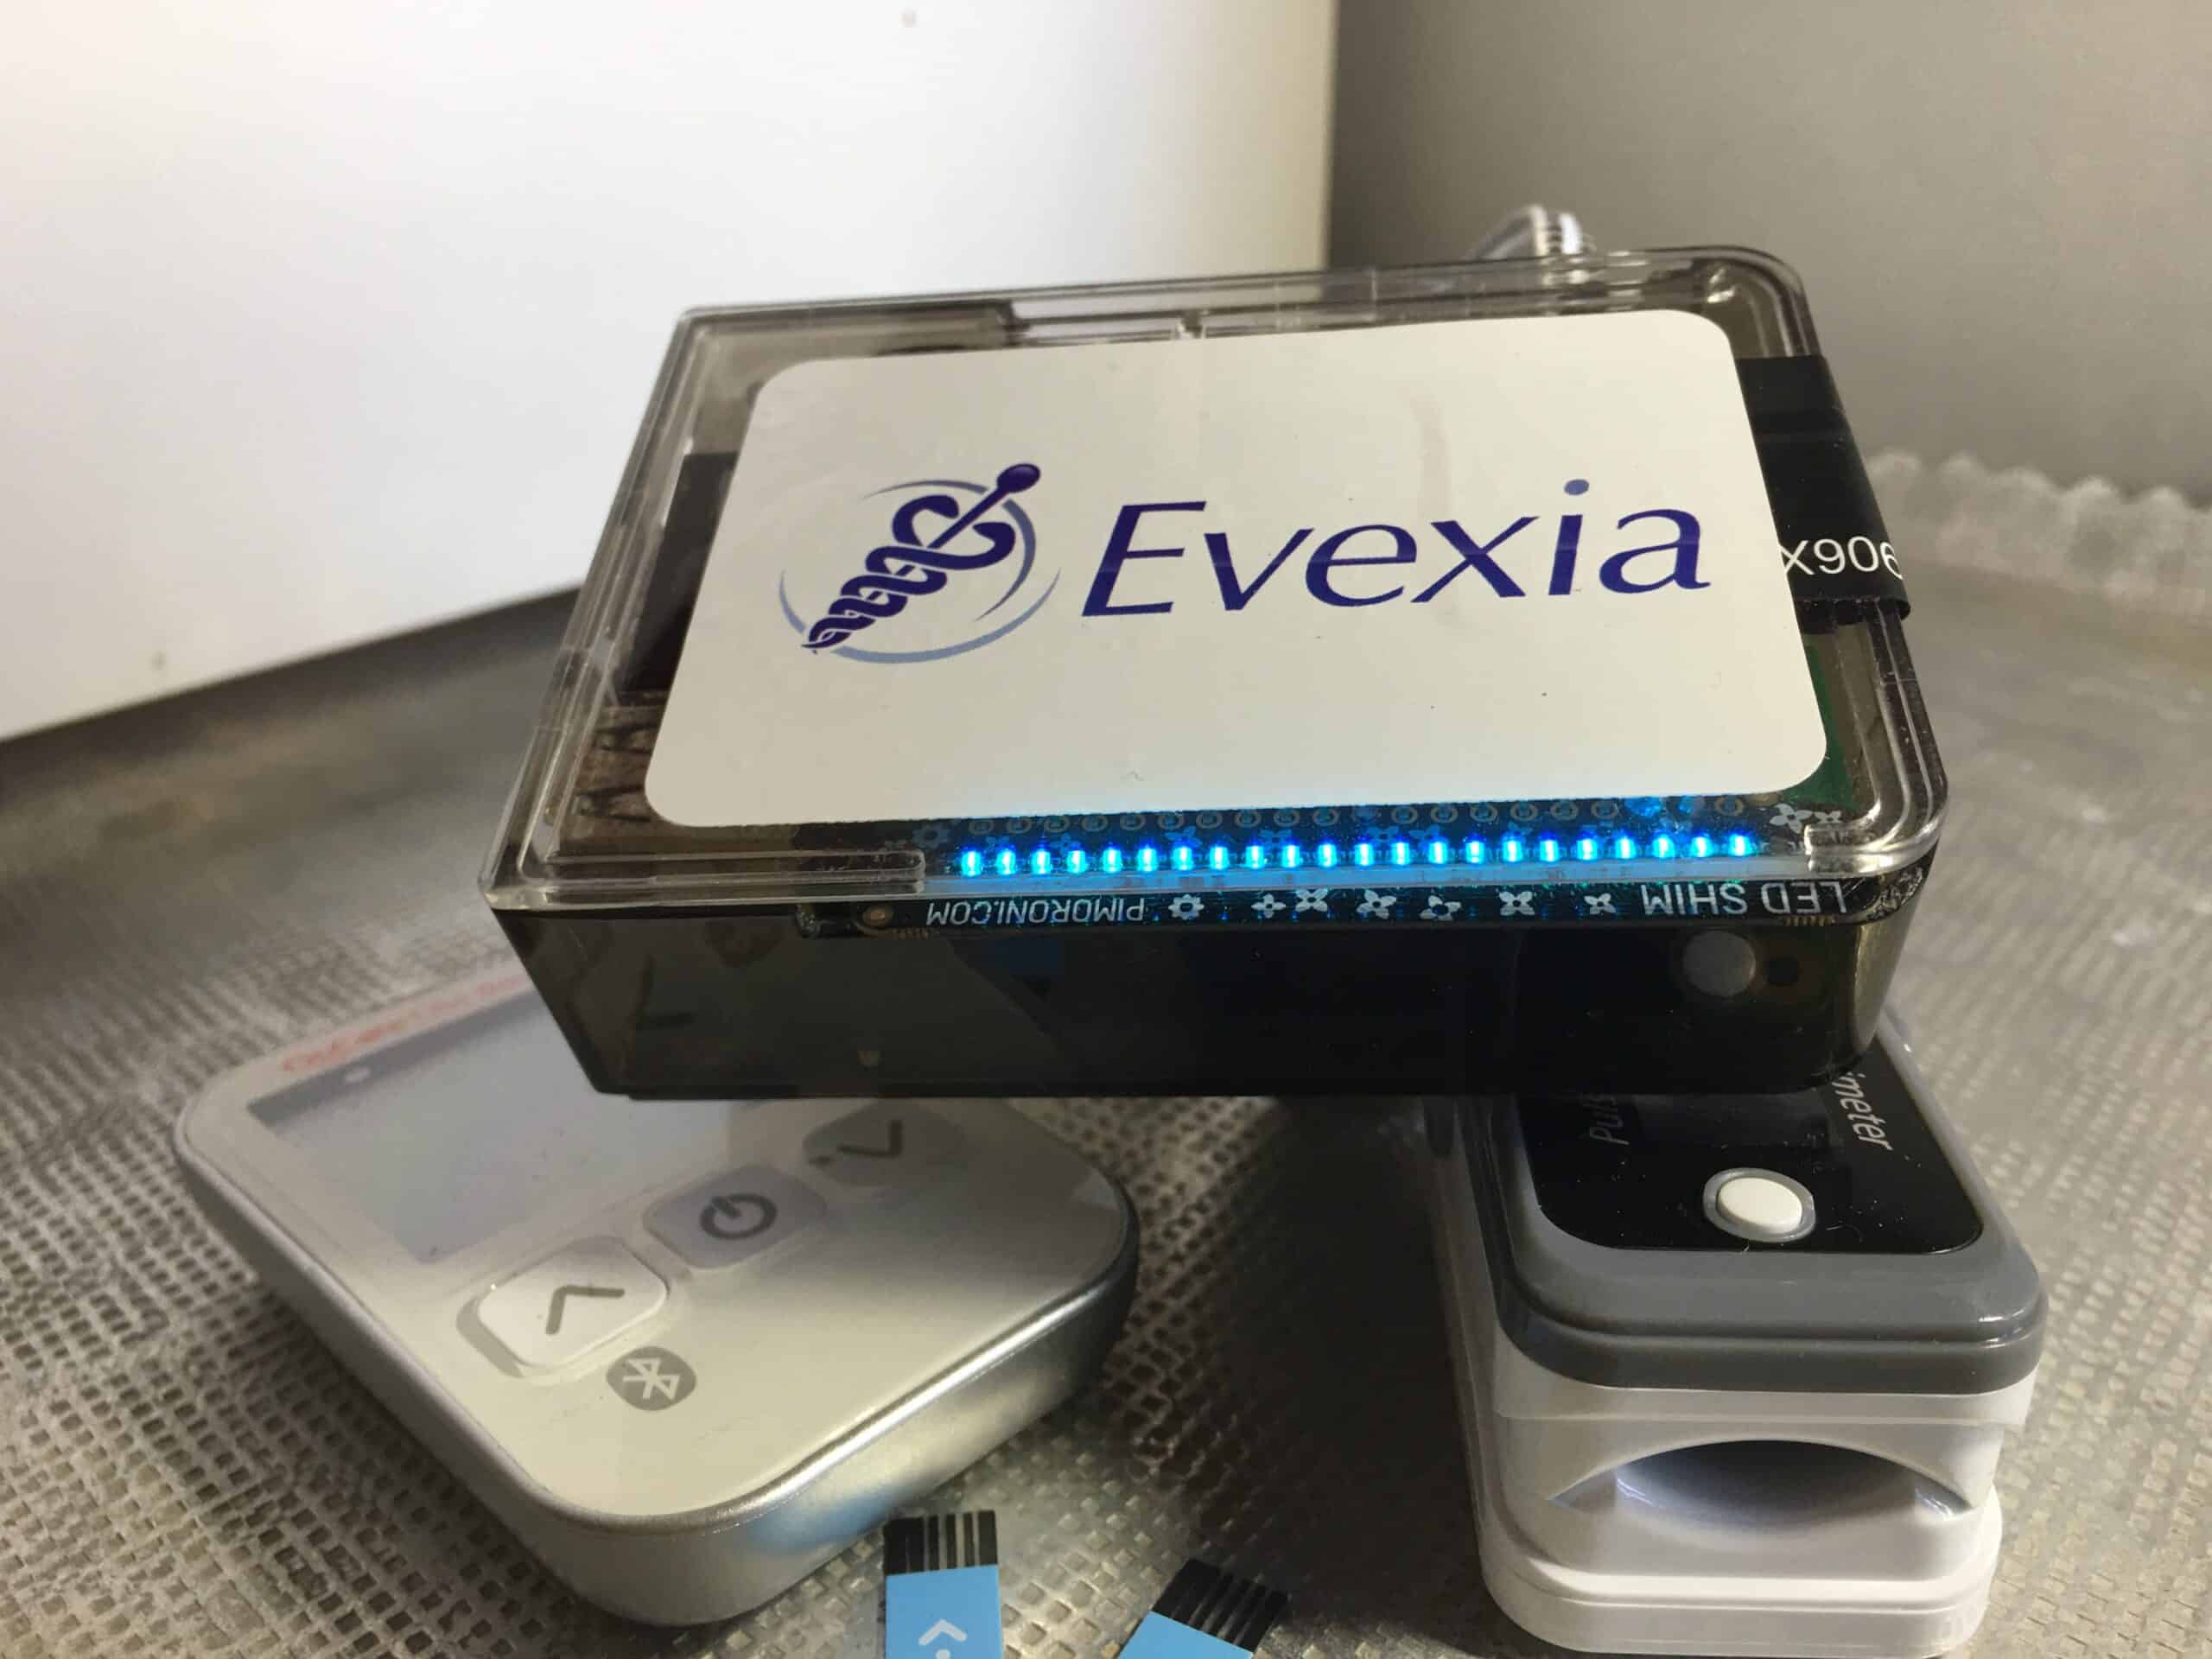 Evexia devices